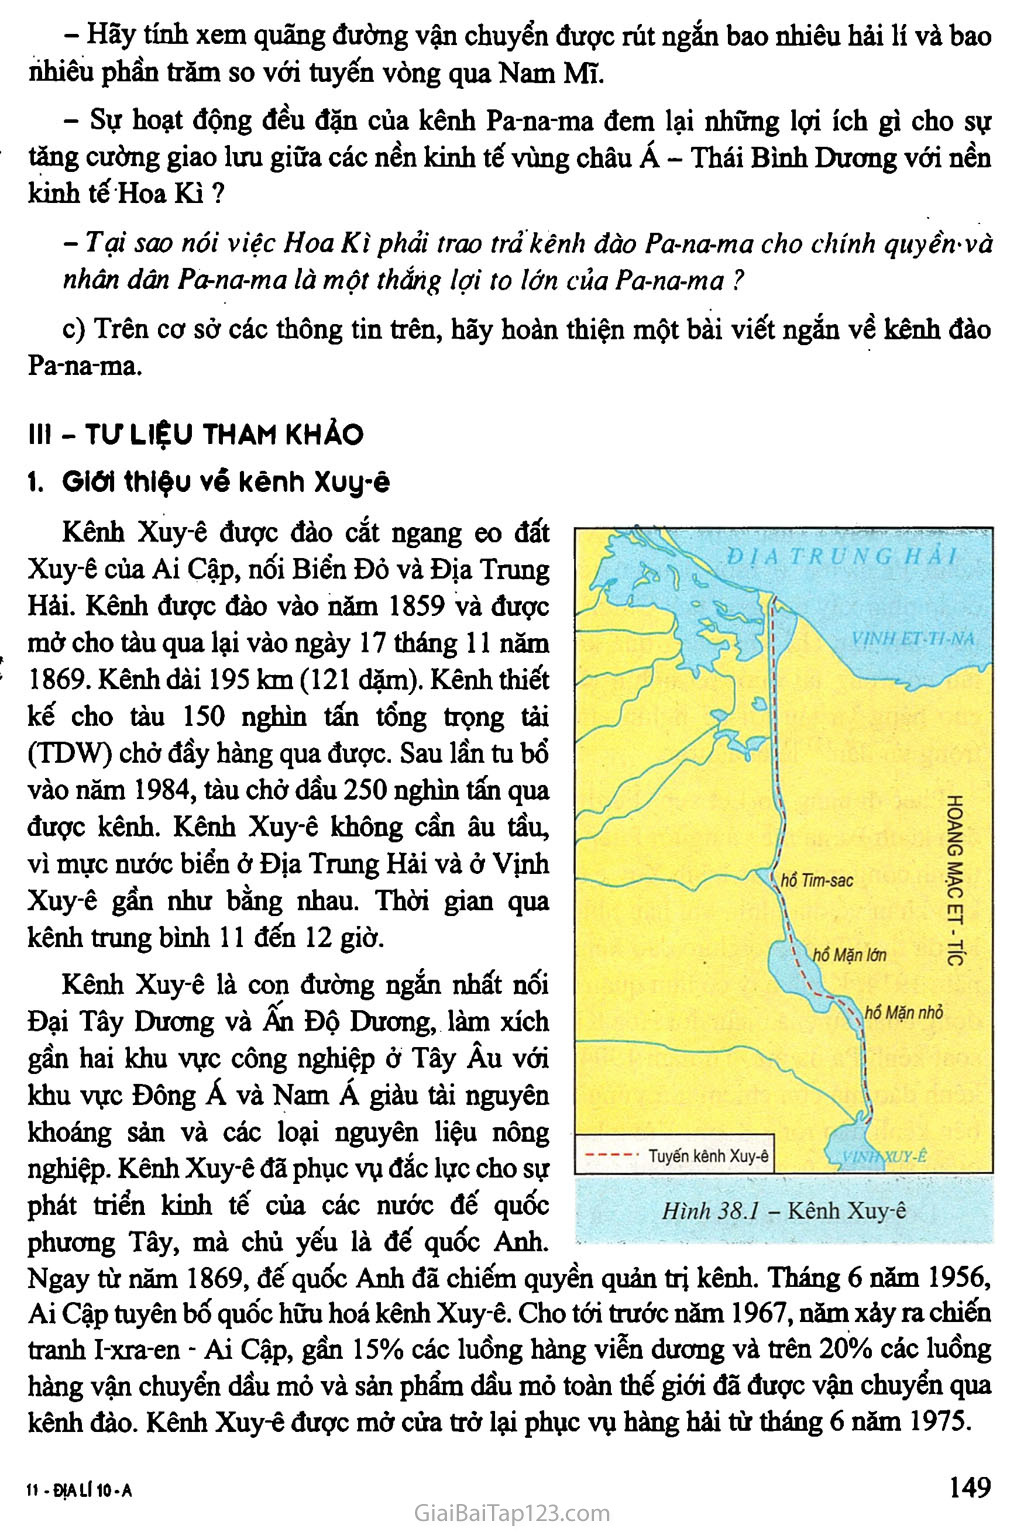 Bài 38. Thực hành: Viết báo cáo ngắn về kênh đào Xuy - ê và kênh đào Pa - na - ma trang 3